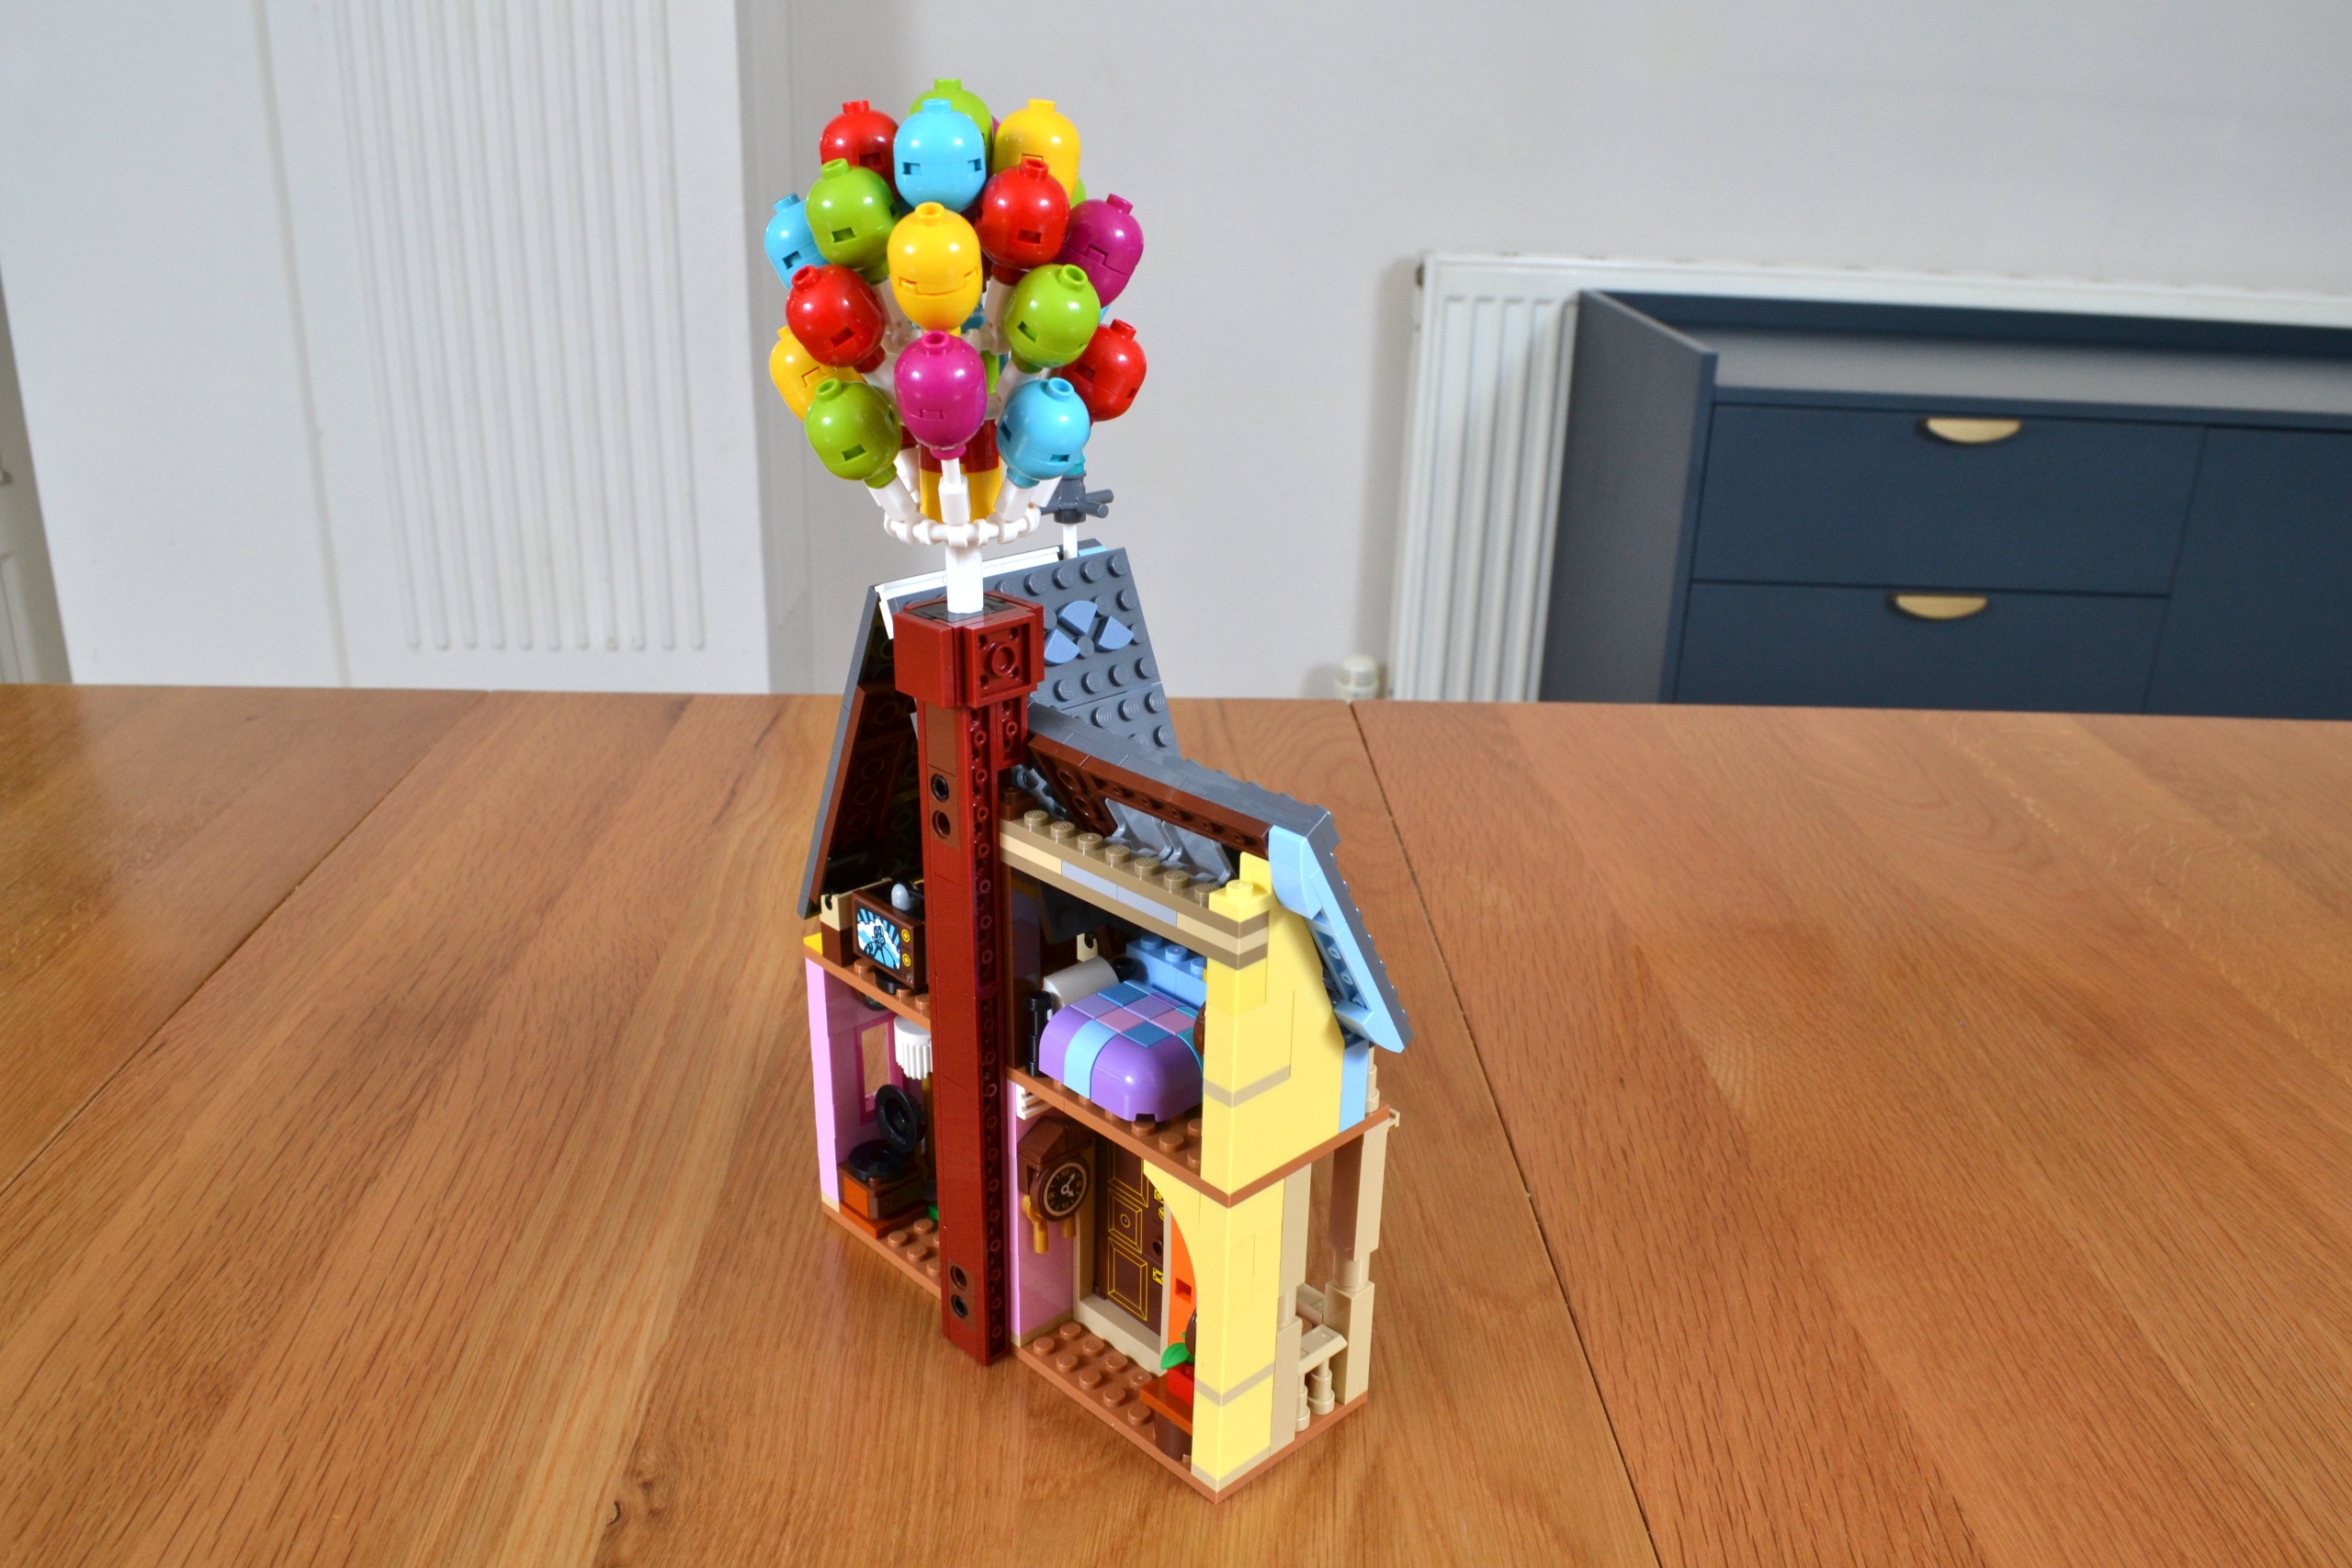 La maison de « Là-haut » - LEGO® Disney 43217 - Super Briques